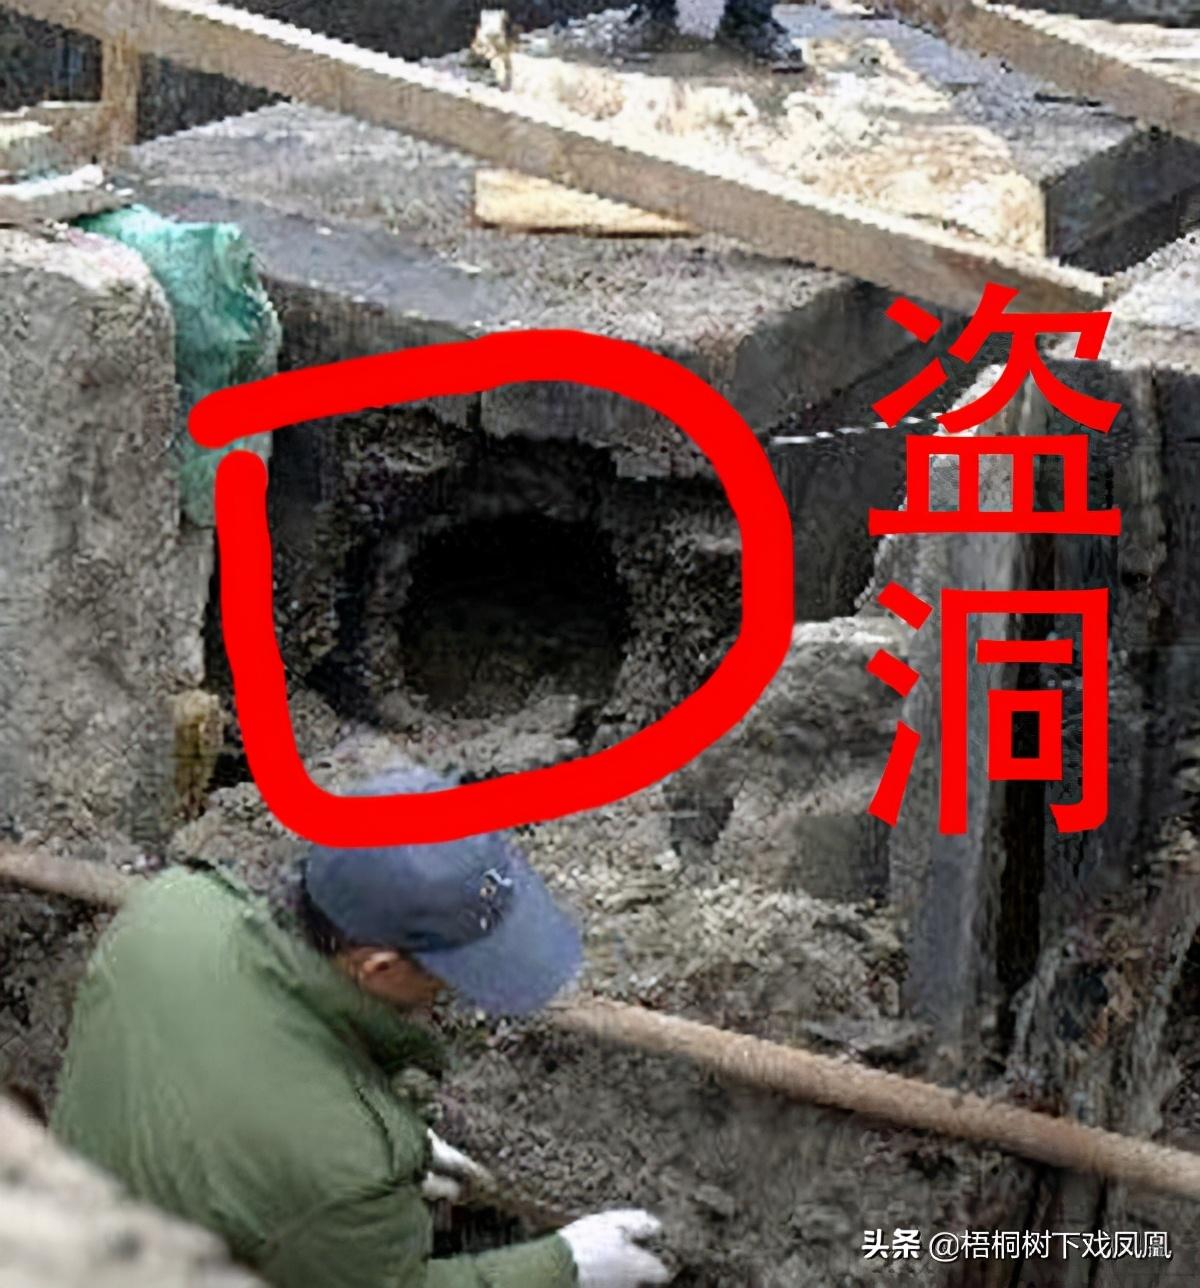 唐朝盗墓者将斧头遗留西汉王墓中，“鬼吹灯”现象被证实确实存在